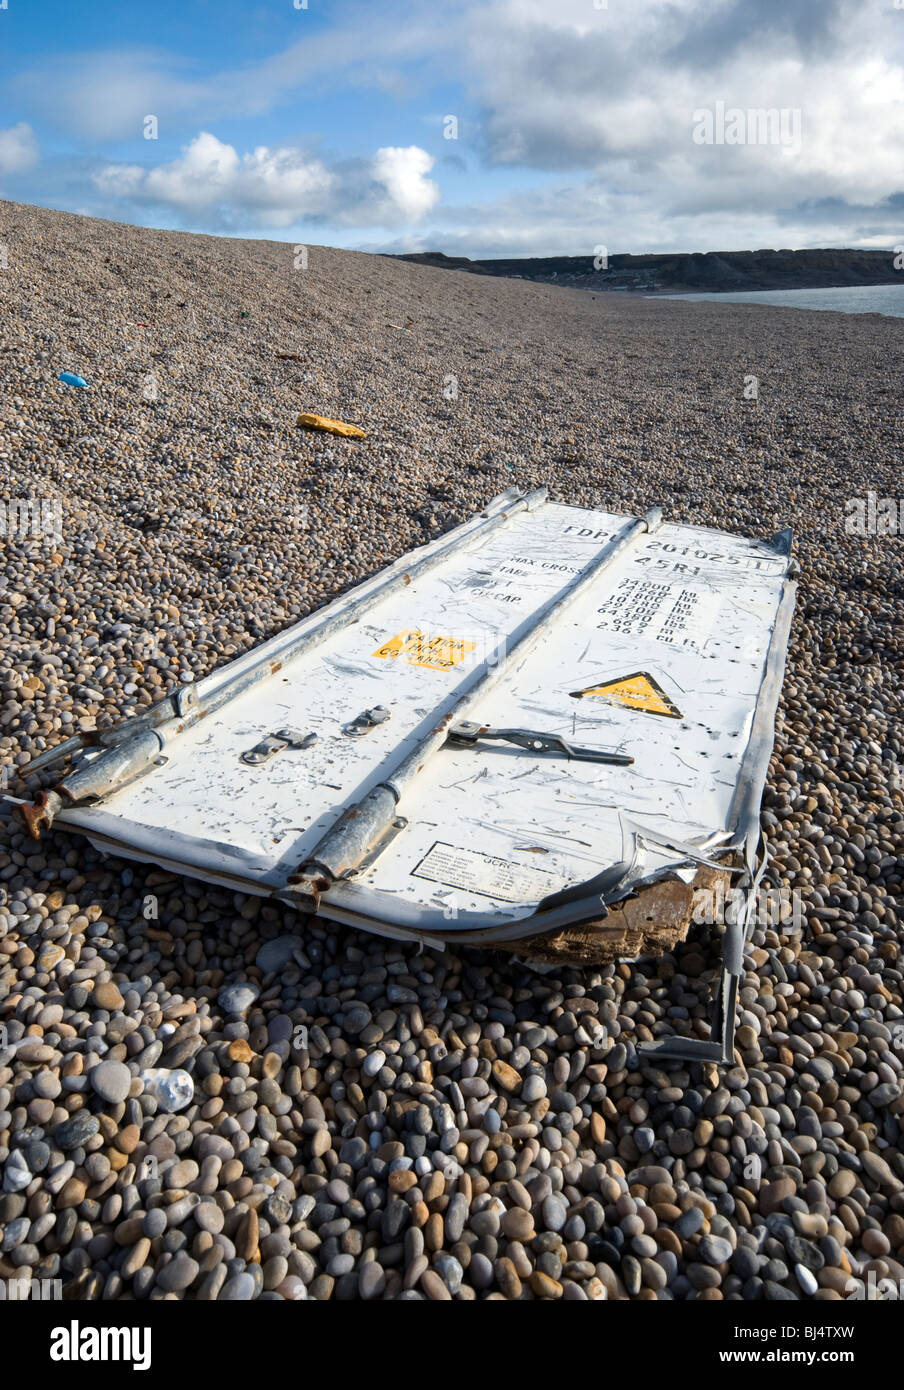 Porte conteneurs échoués sur la plage de Chesil dorset Banque D'Images